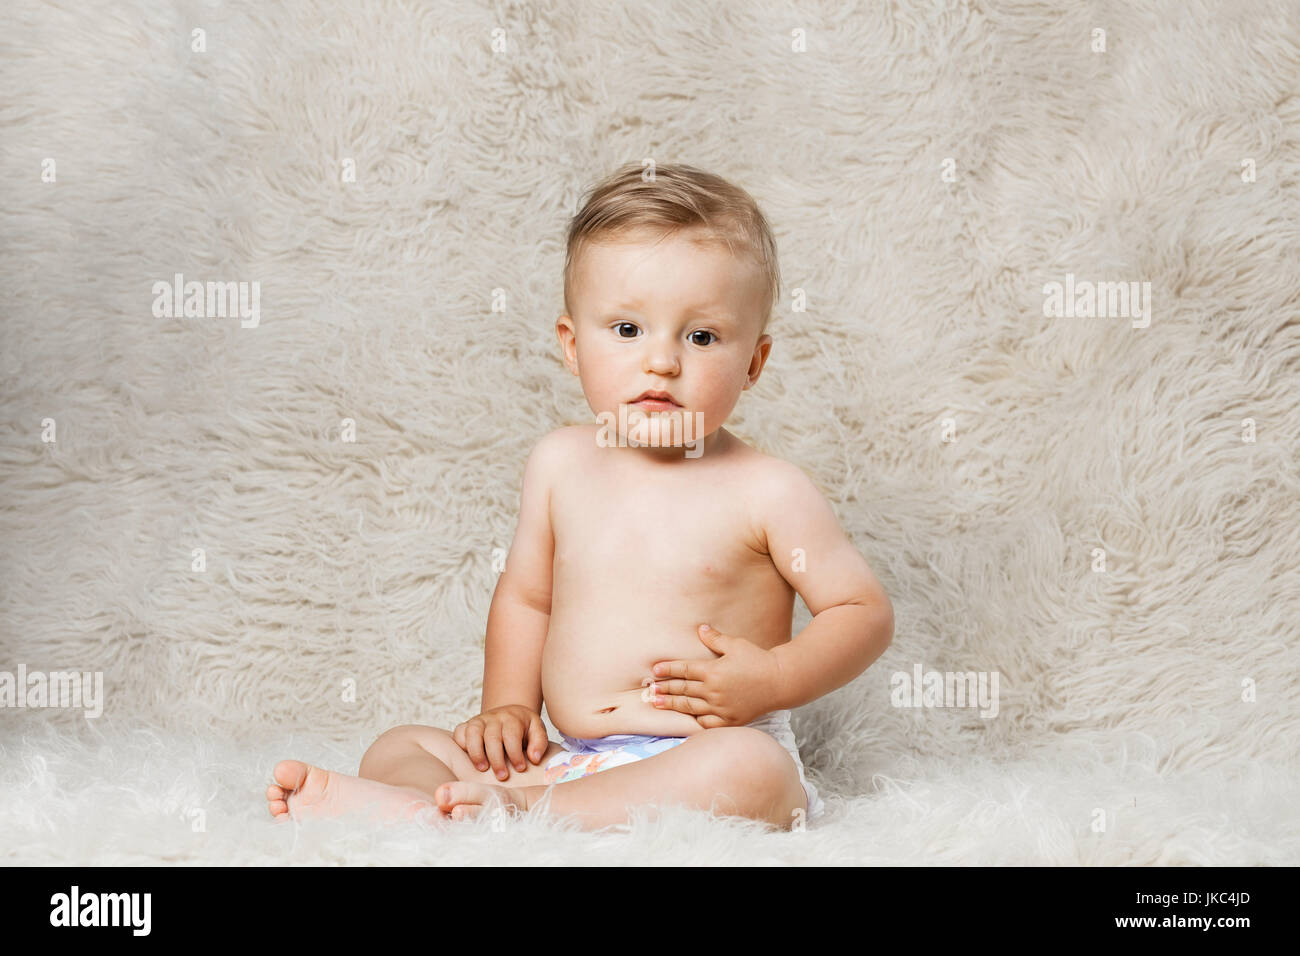 Baby Boy en pañales, sentada sobre una manta de lana shaggy caseros Foto de stock